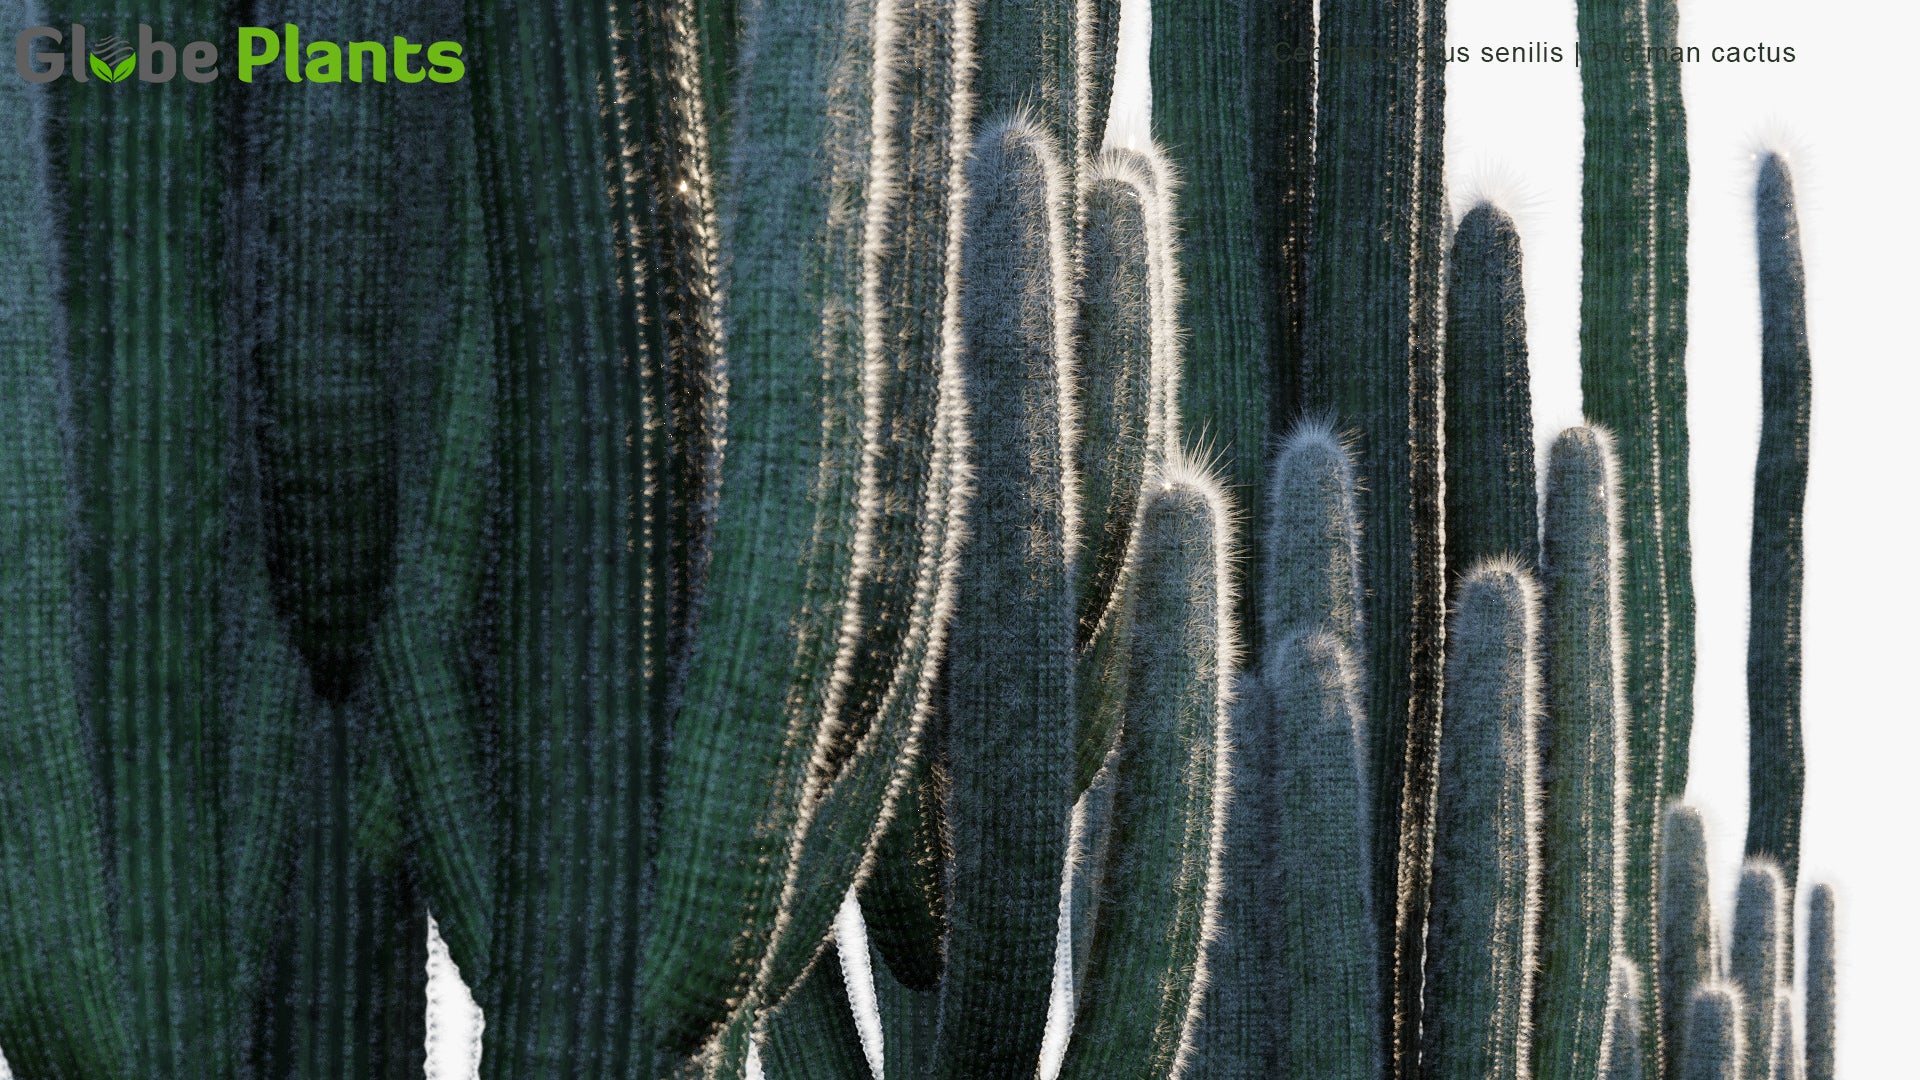 Cephalocereus Senilis - Old Man Cactus